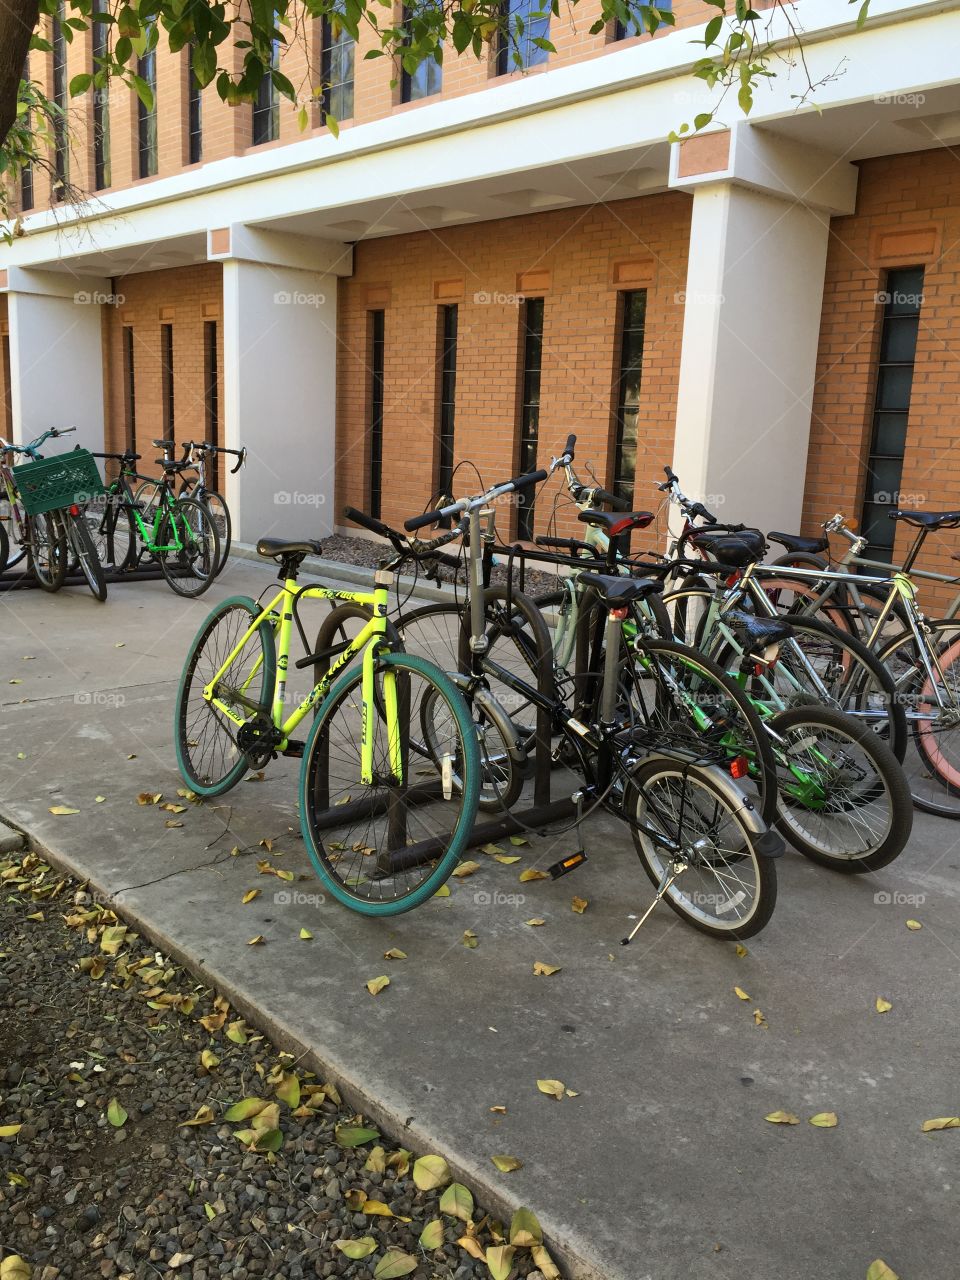 Bikes parking